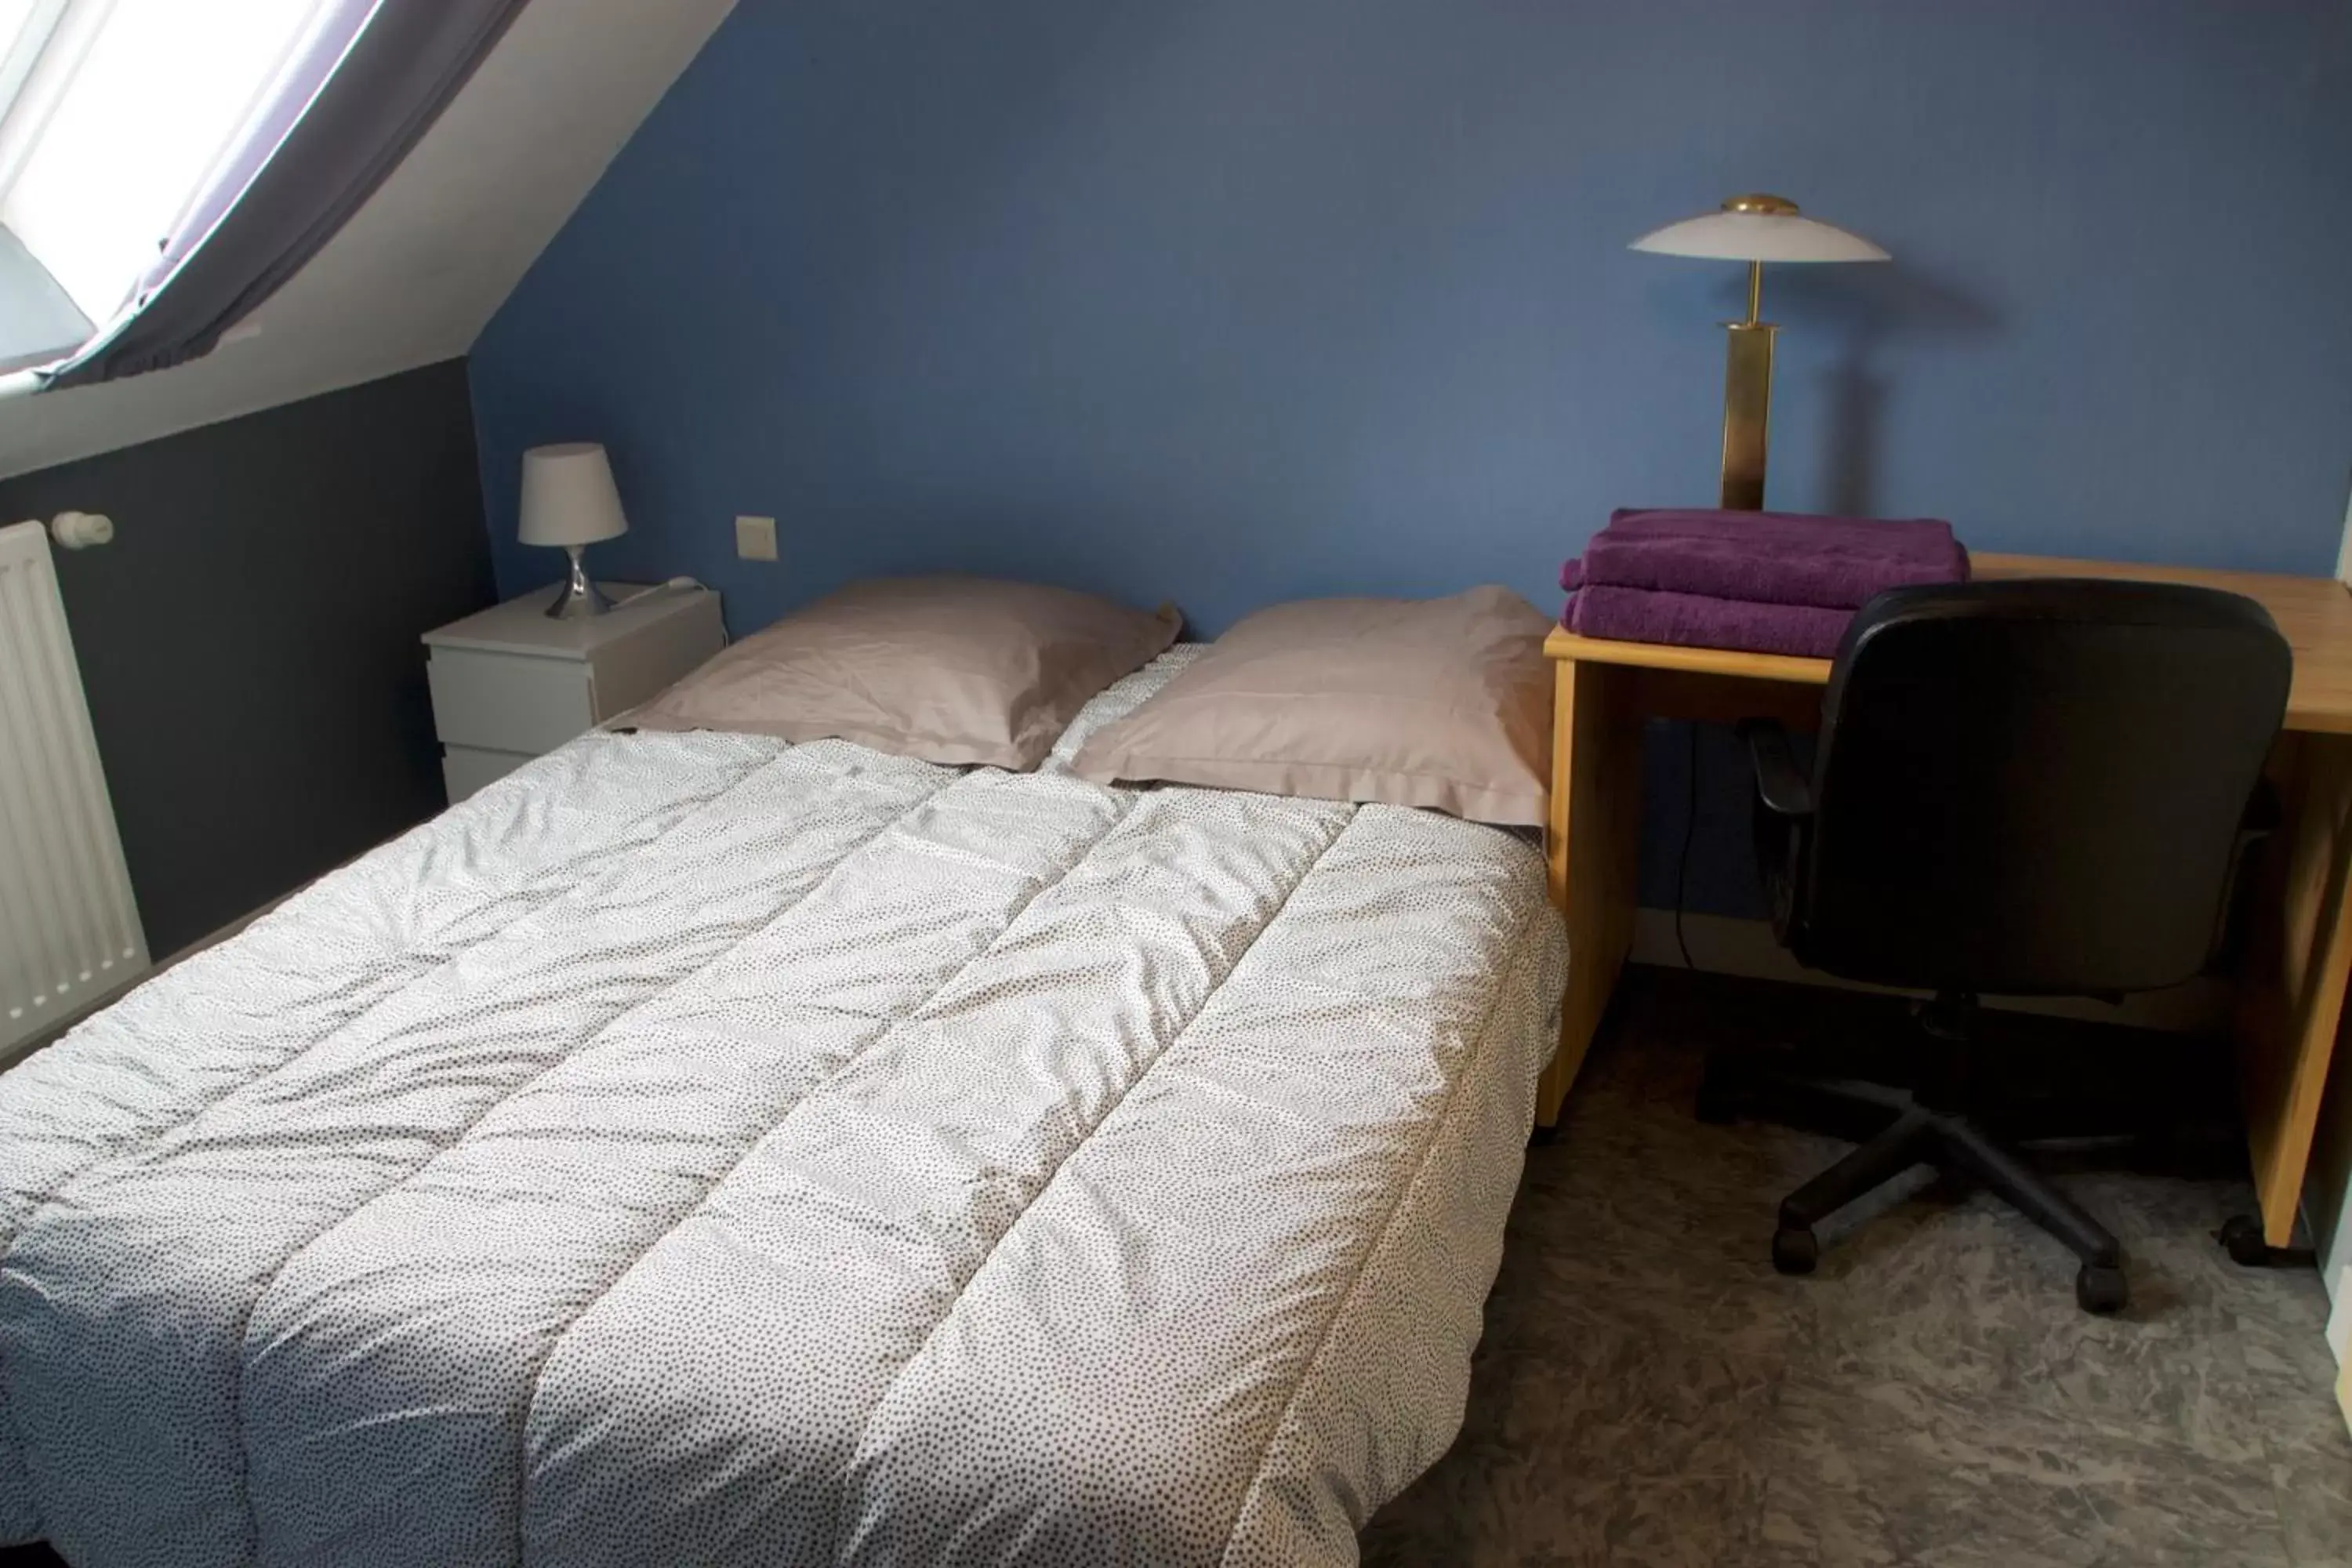 Bedroom, Bed in chambres d'hôtes les mésanges avec salle d'eau privative pdj compris